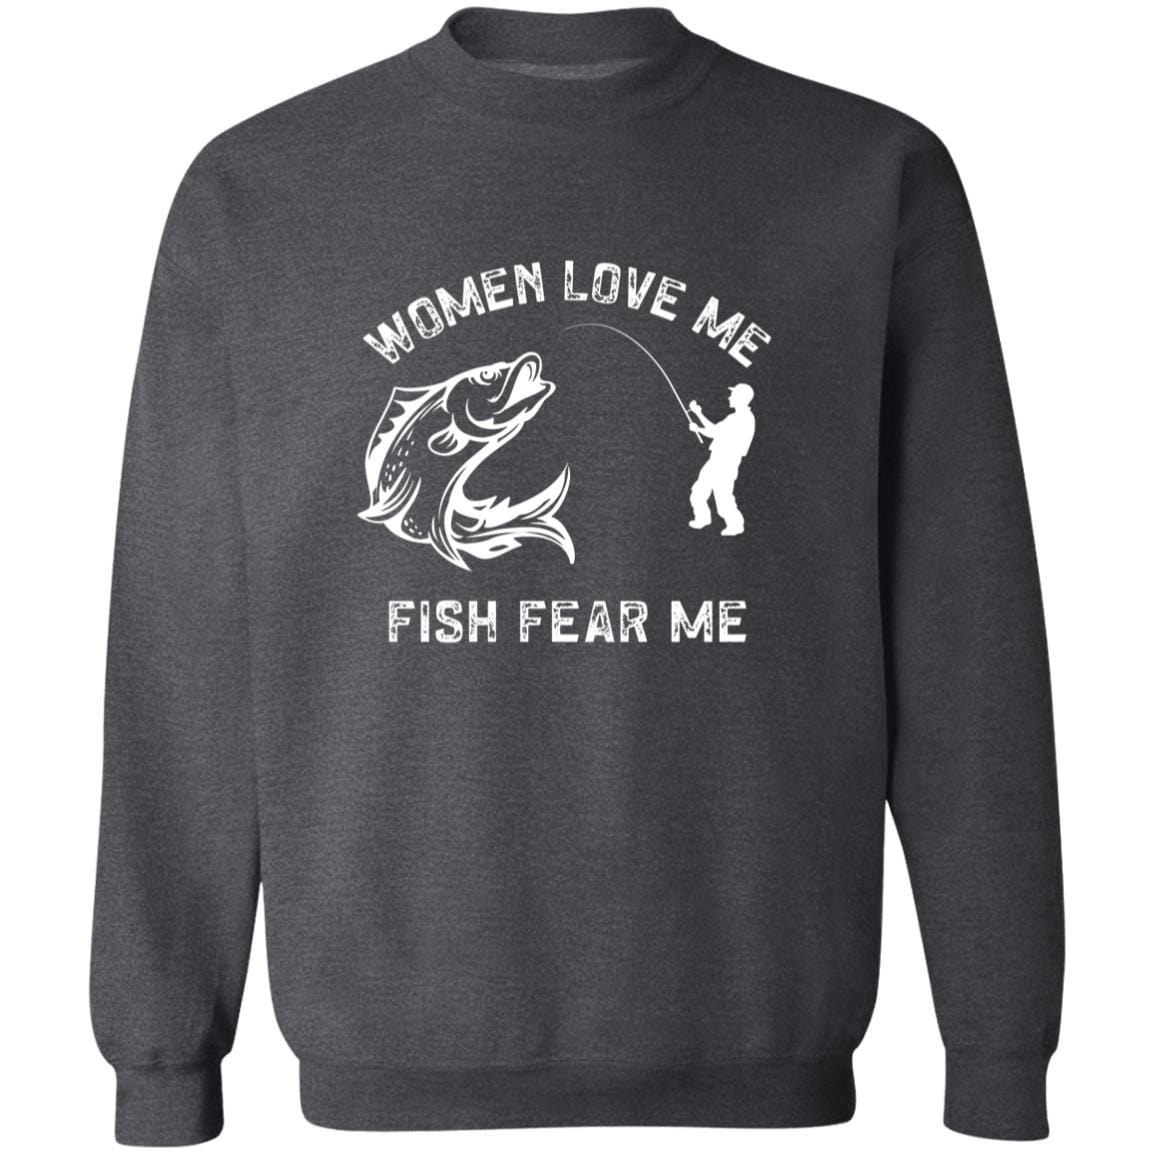 Women Love Me, Fish Fear Me Sweatshirt